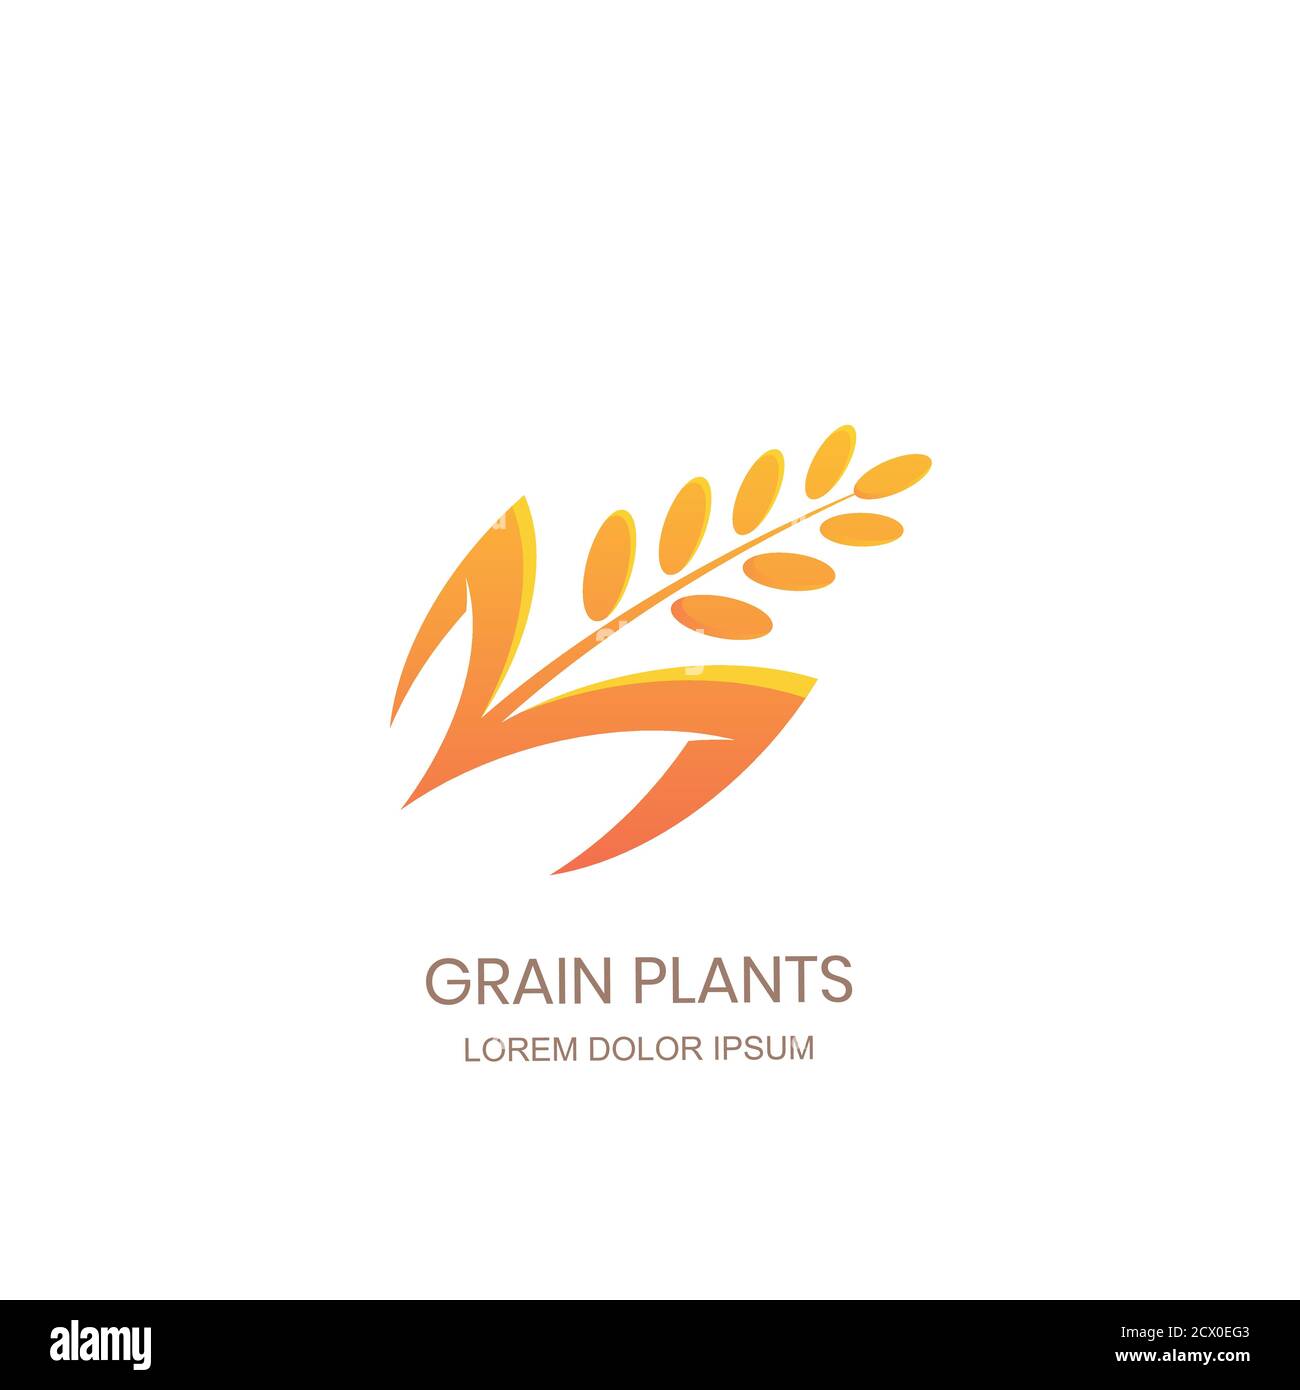 Concept de signe de logo de plantes de grain. Icône riz, blé, seigle céréales. Design vectoriel pour emballage de farine biologique, étiquette de pain, boulangerie. Illustration de Vecteur